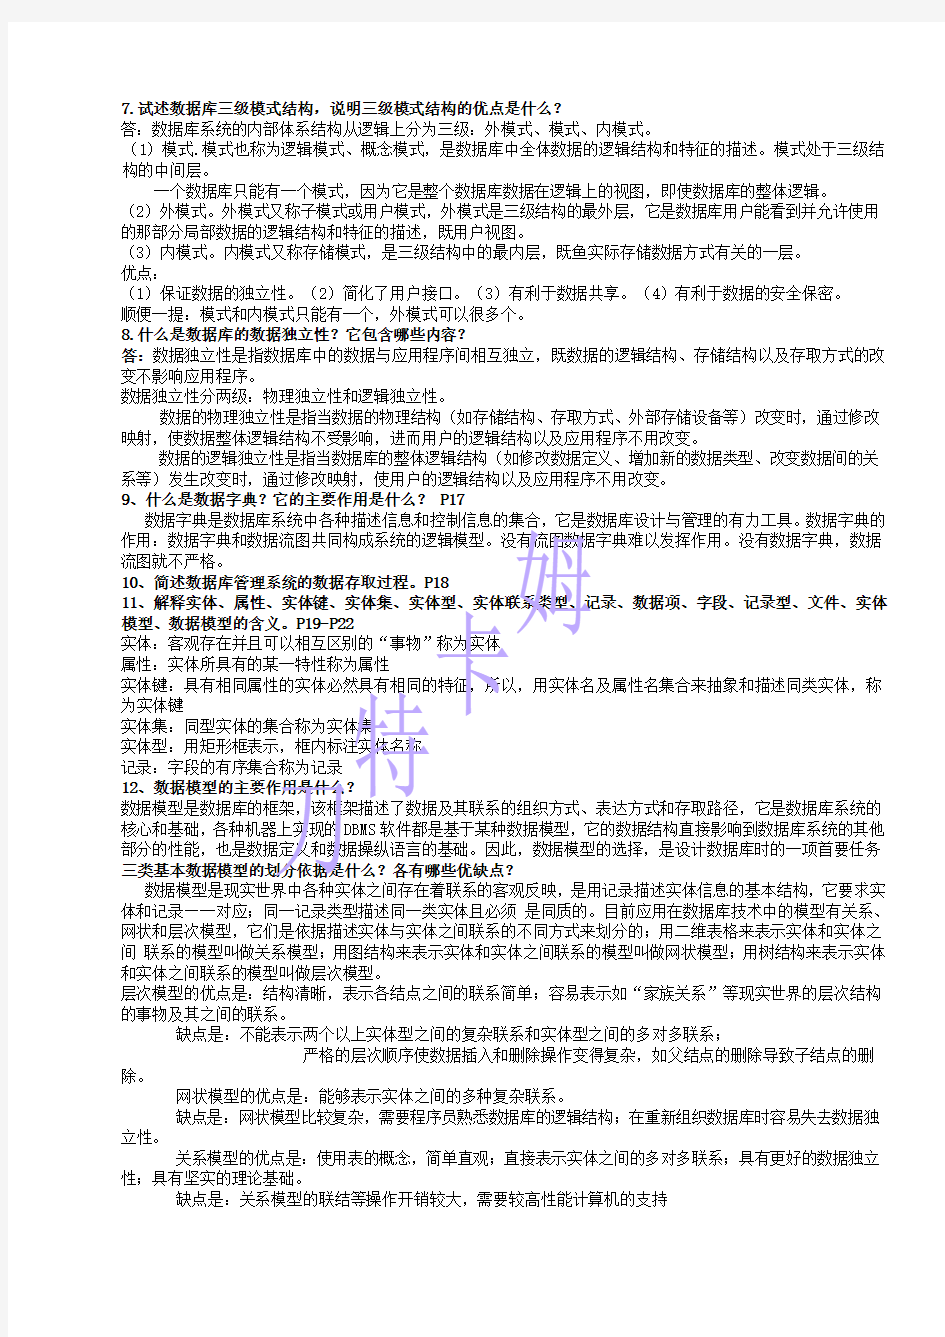 数据库原理与应用教程第二版人民邮电出版社(陈志泊)习题参考答案 (完整版)